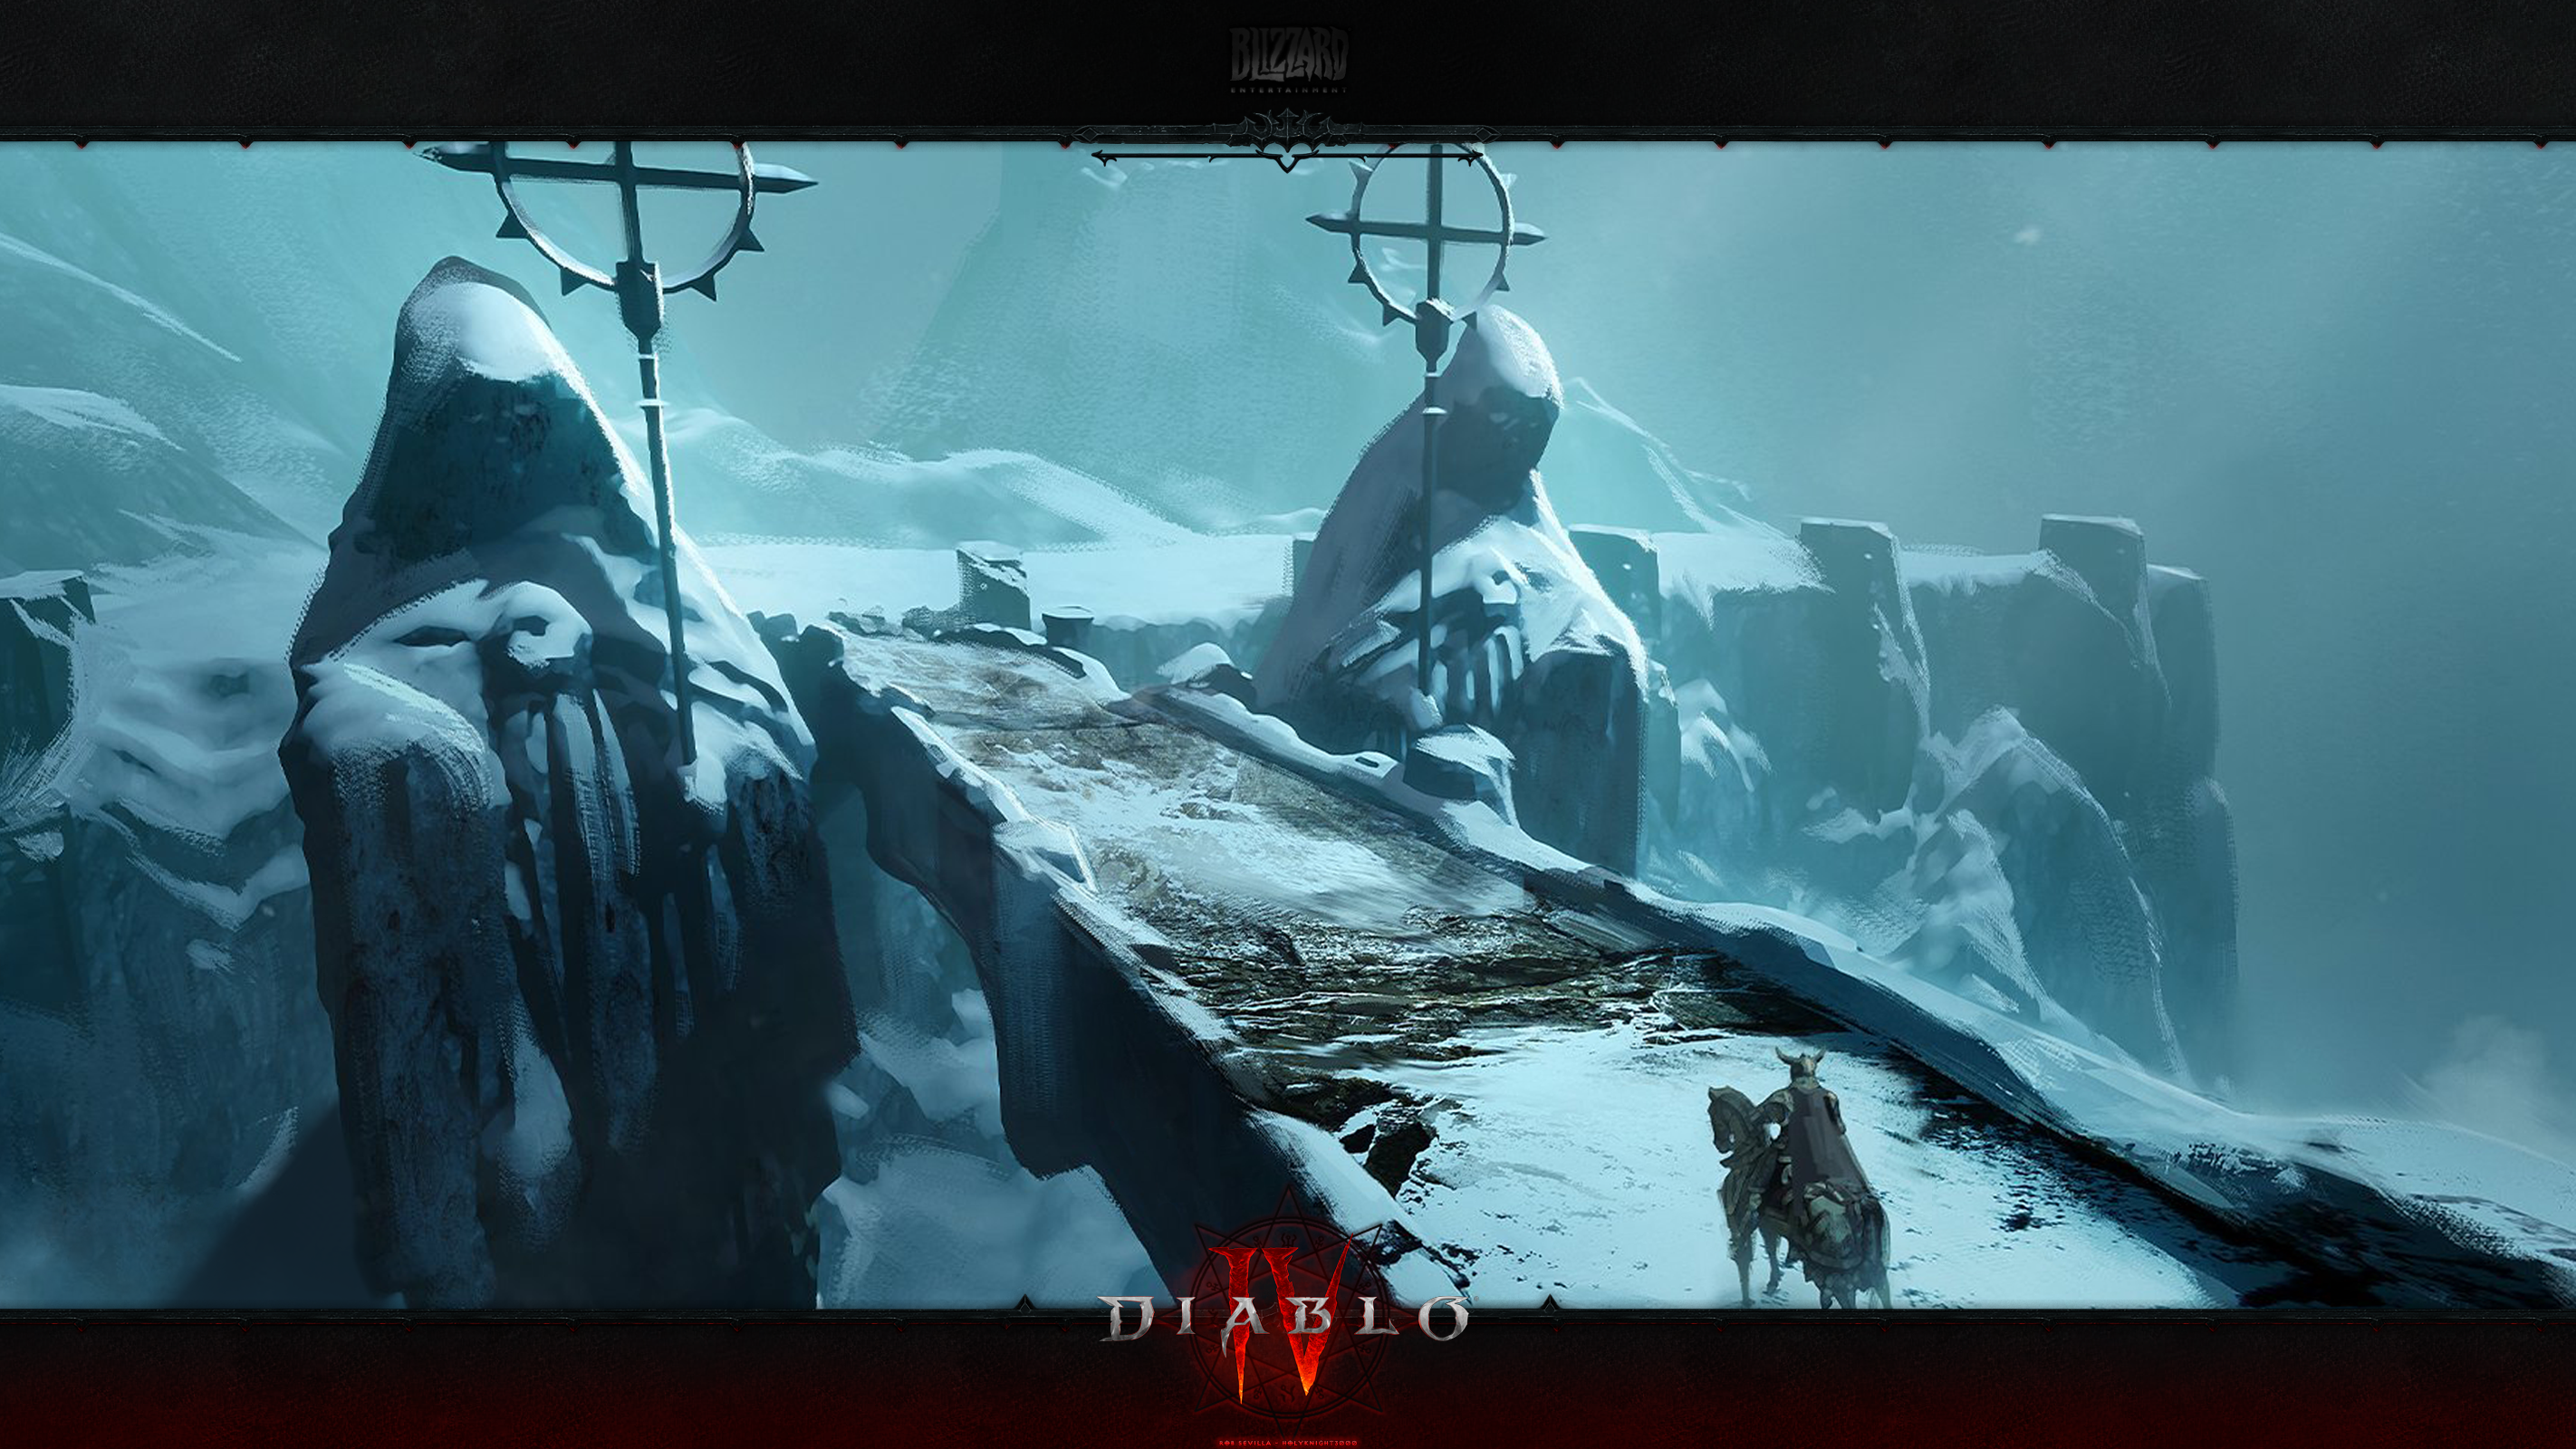 Diablo IV #25: Bridge to the Alabaster Monastery